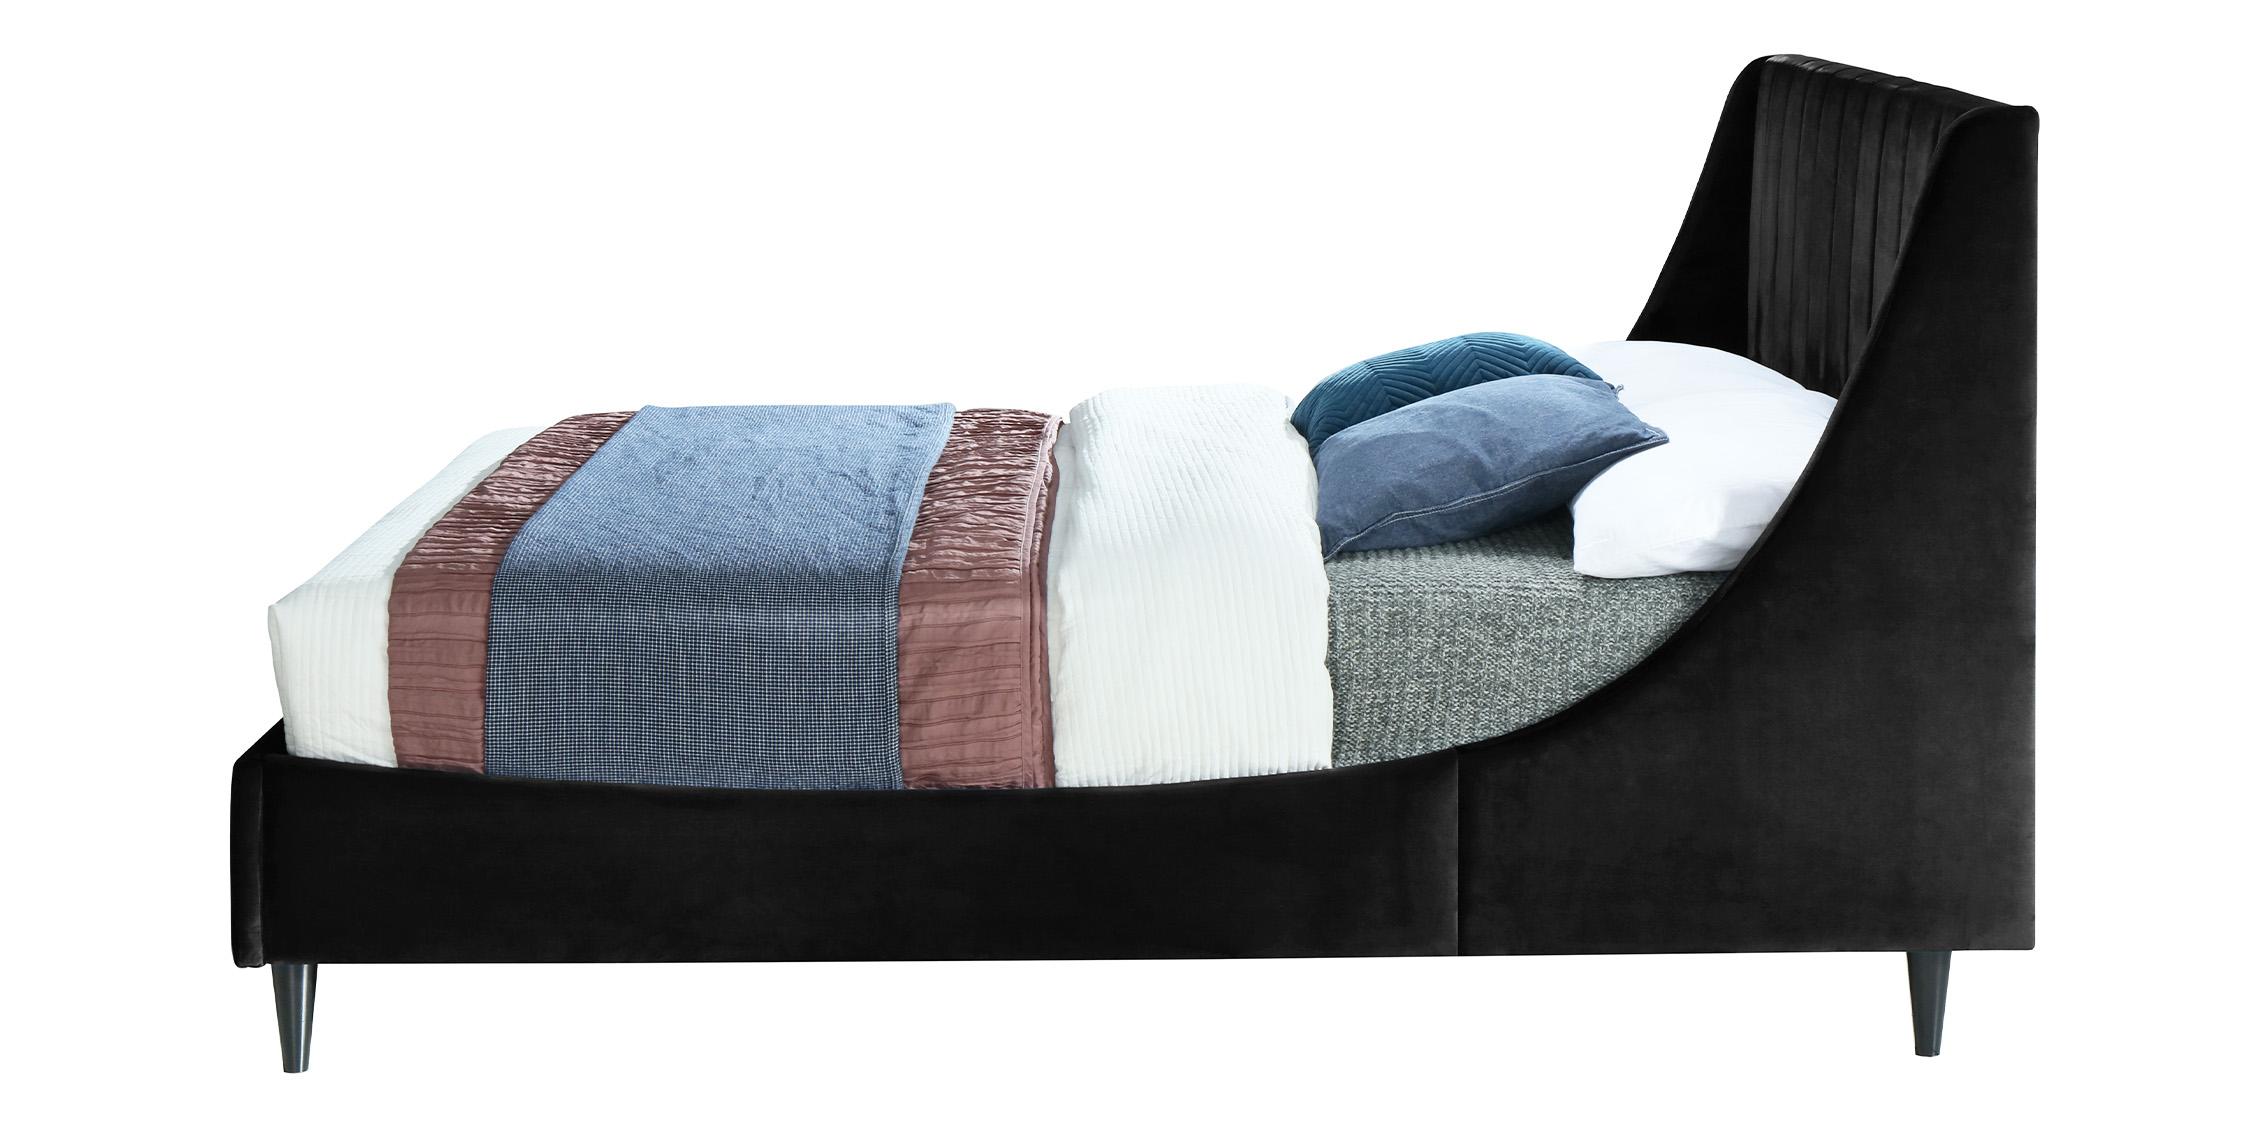 

    
EvaBlack-F Meridian Furniture Platform Bed
